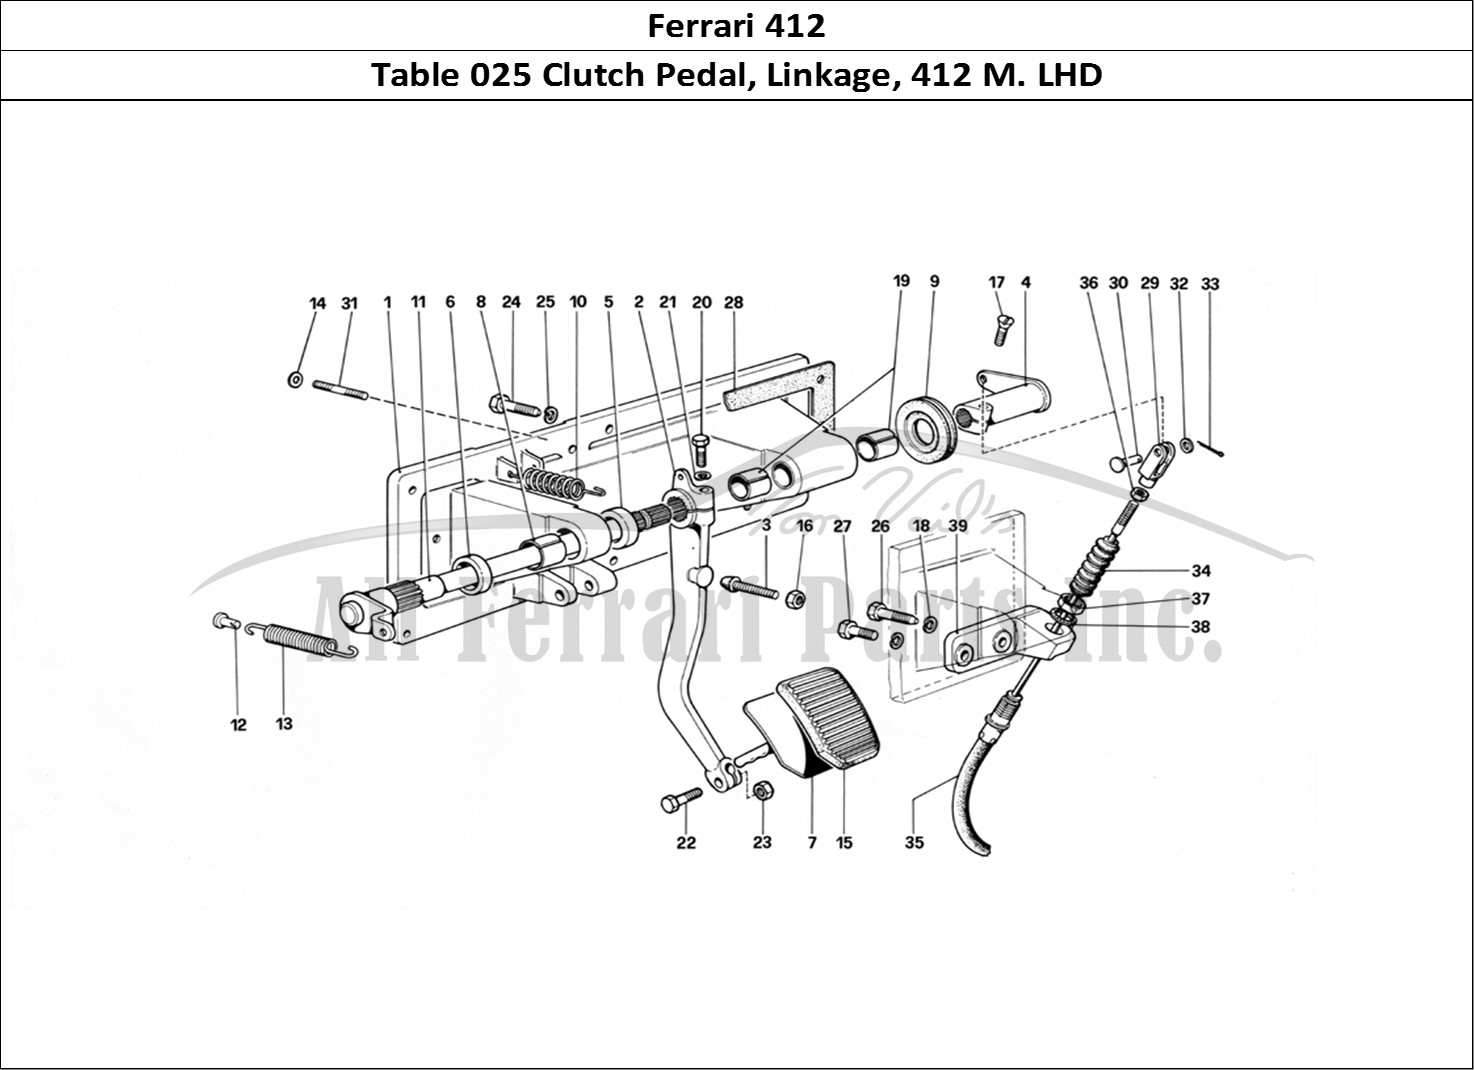 Ferrari Parts Ferrari 412 (Mechanical) Page 025 ClutCH Release Control -